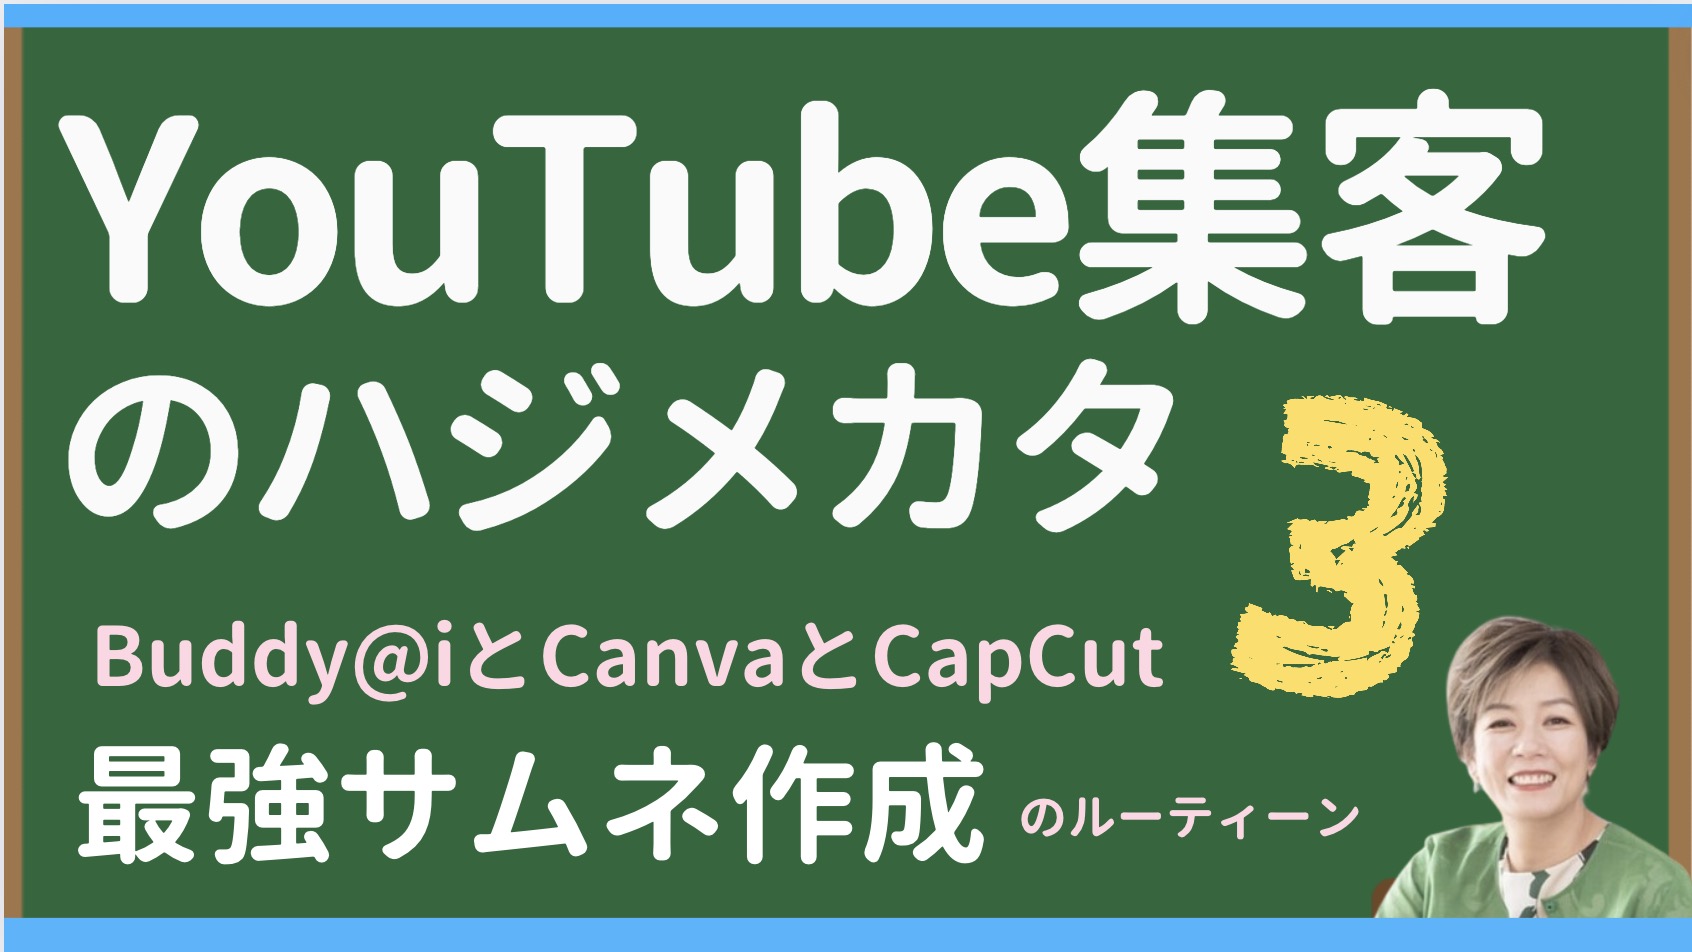 集まる集客®️式YouTube集客のハジメカタSTEP3　YouTubeサムネ作成最強ルーティーン（Buddy@i・Canva・CapCut）